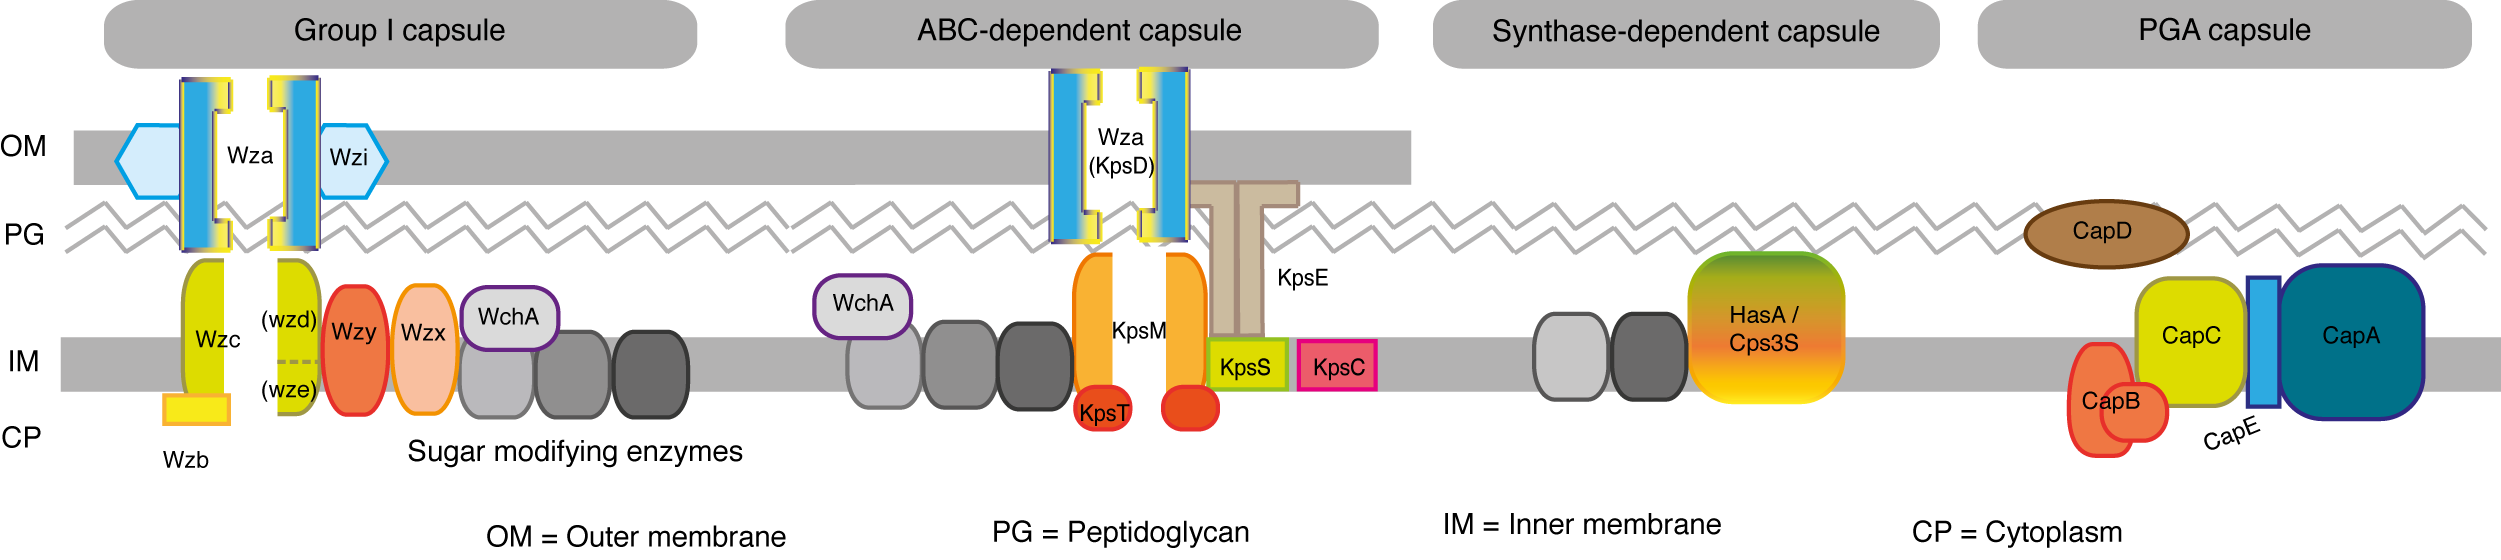 Capsule Systems schema